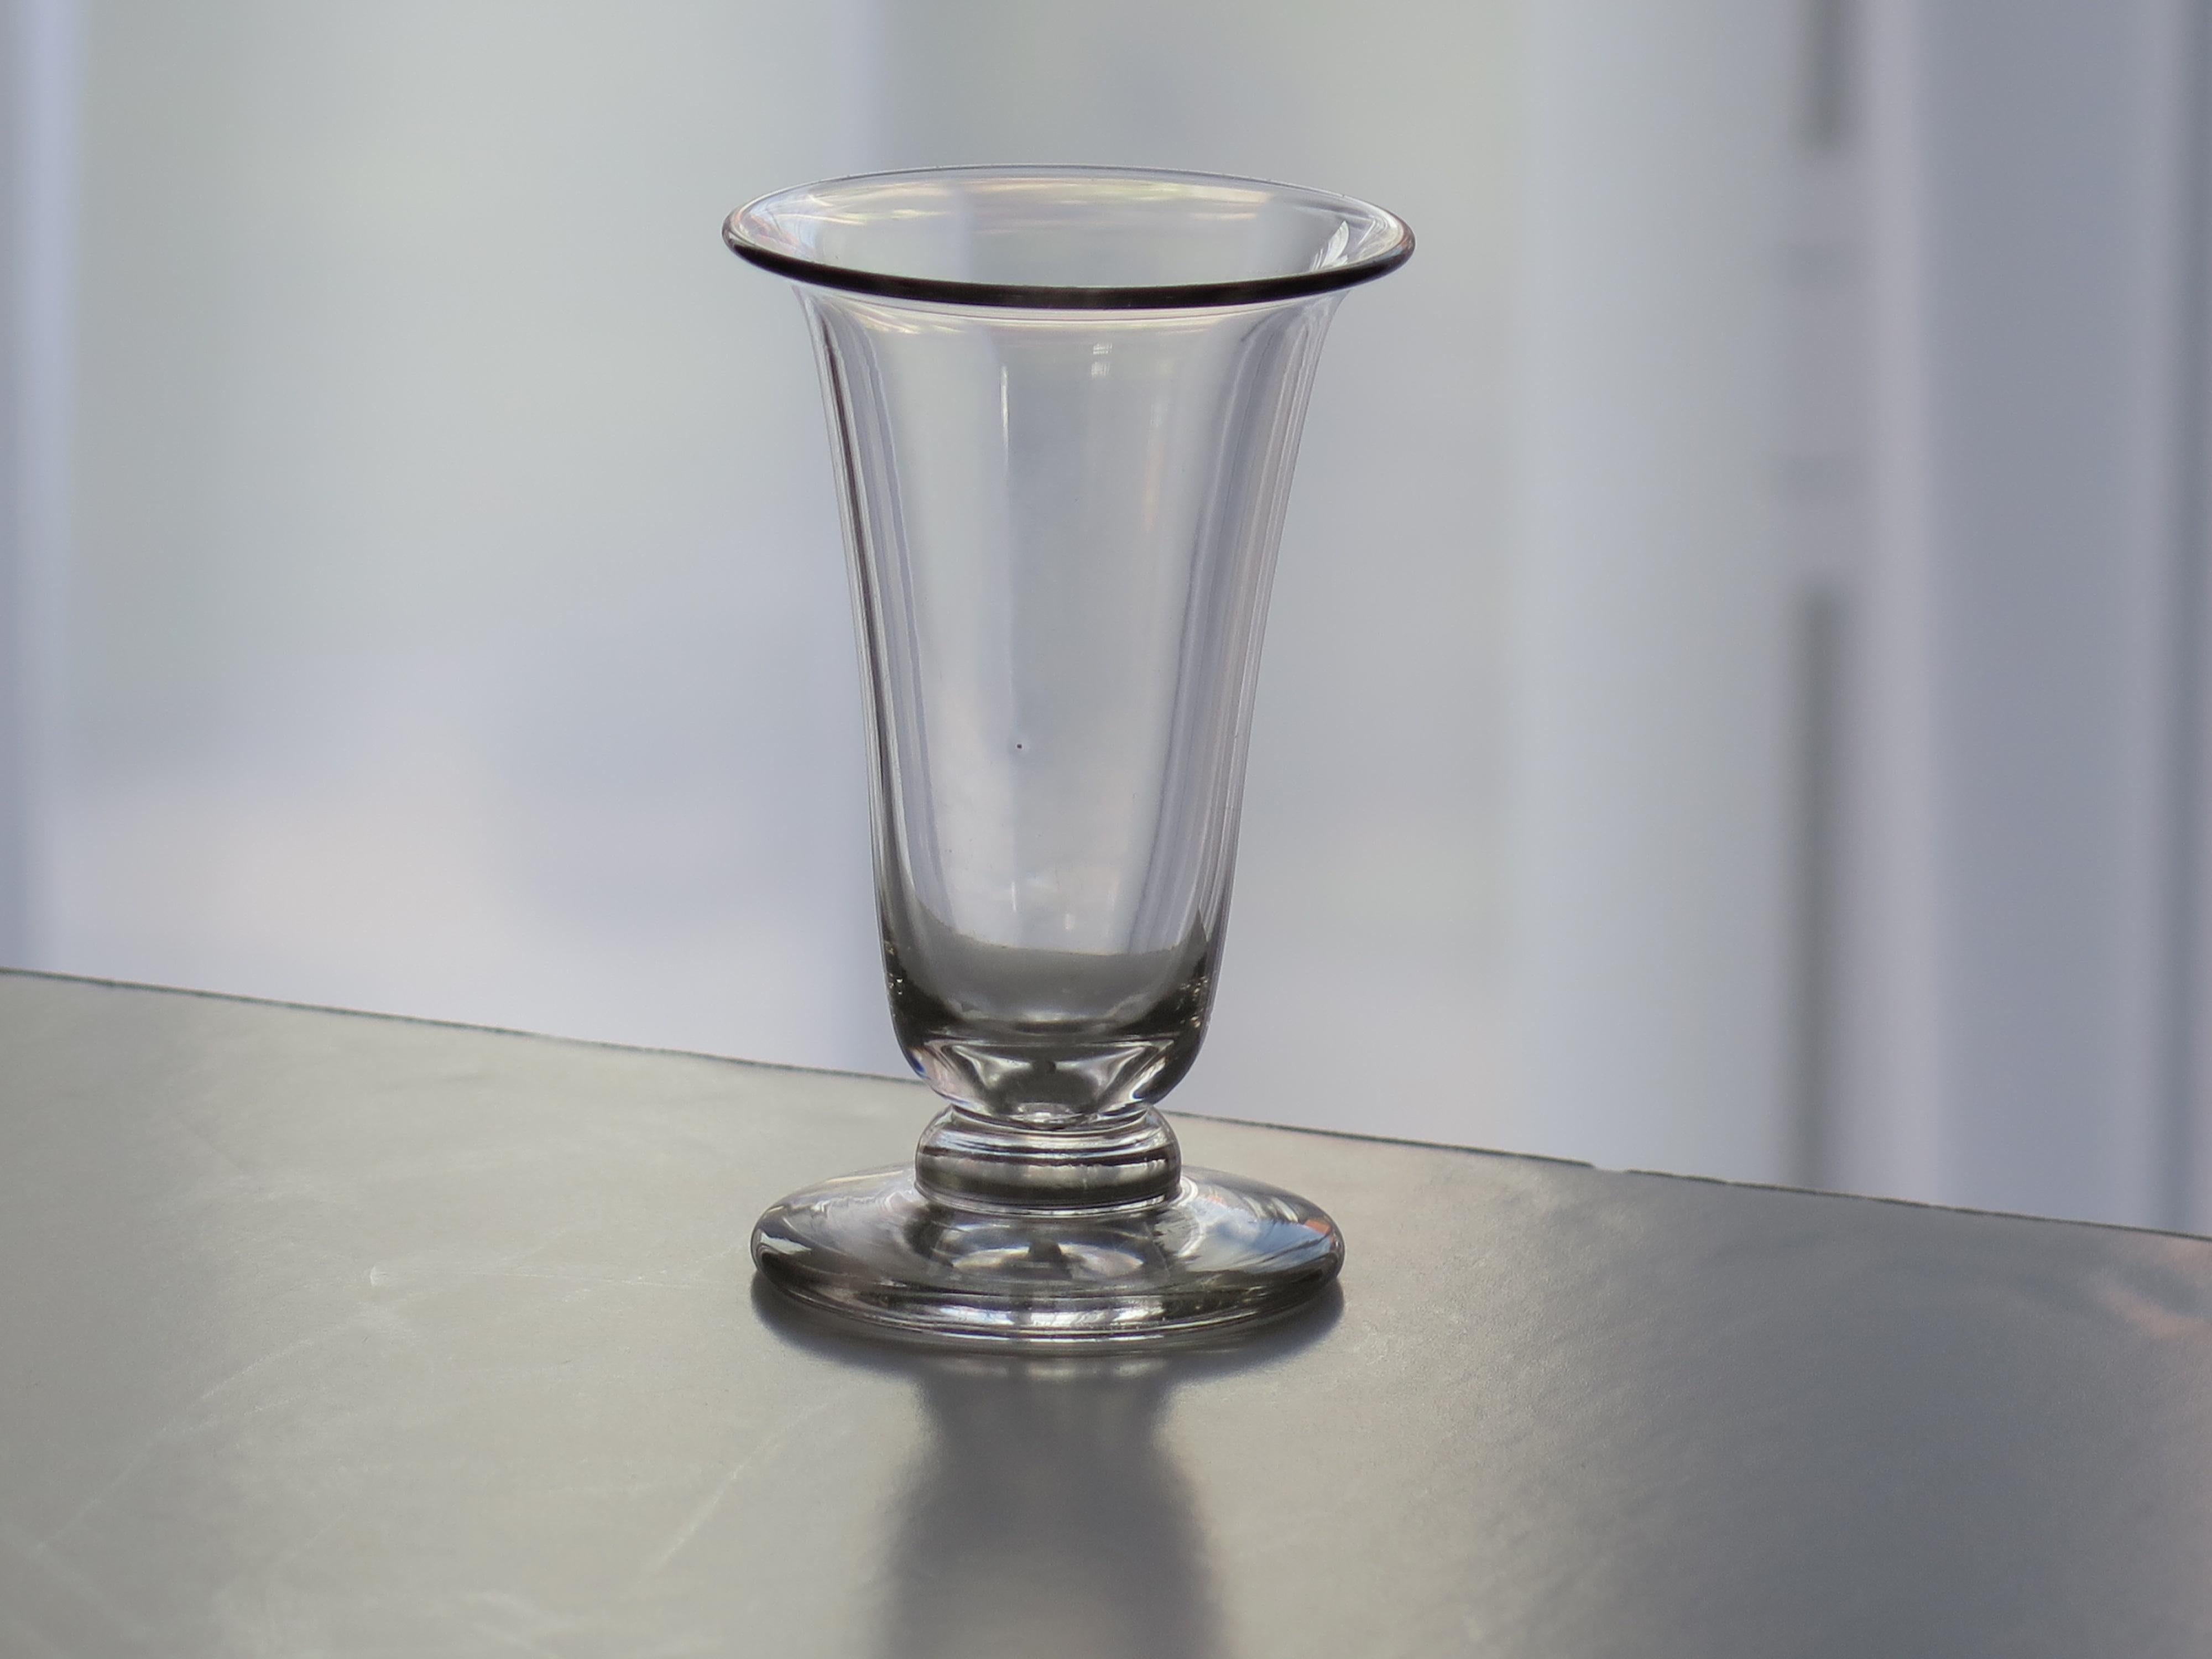 Es handelt sich um ein sehr gutes mundgeblasenes englisches Jelly-Glas aus dem letzten Viertel des 18. Jahrhunderts, um 1790.

Diese Gläser sind sehr sammelwürdig. Es ist aus englischem Bleiglas gefertigt, das relativ schwer ist und eine sanfte